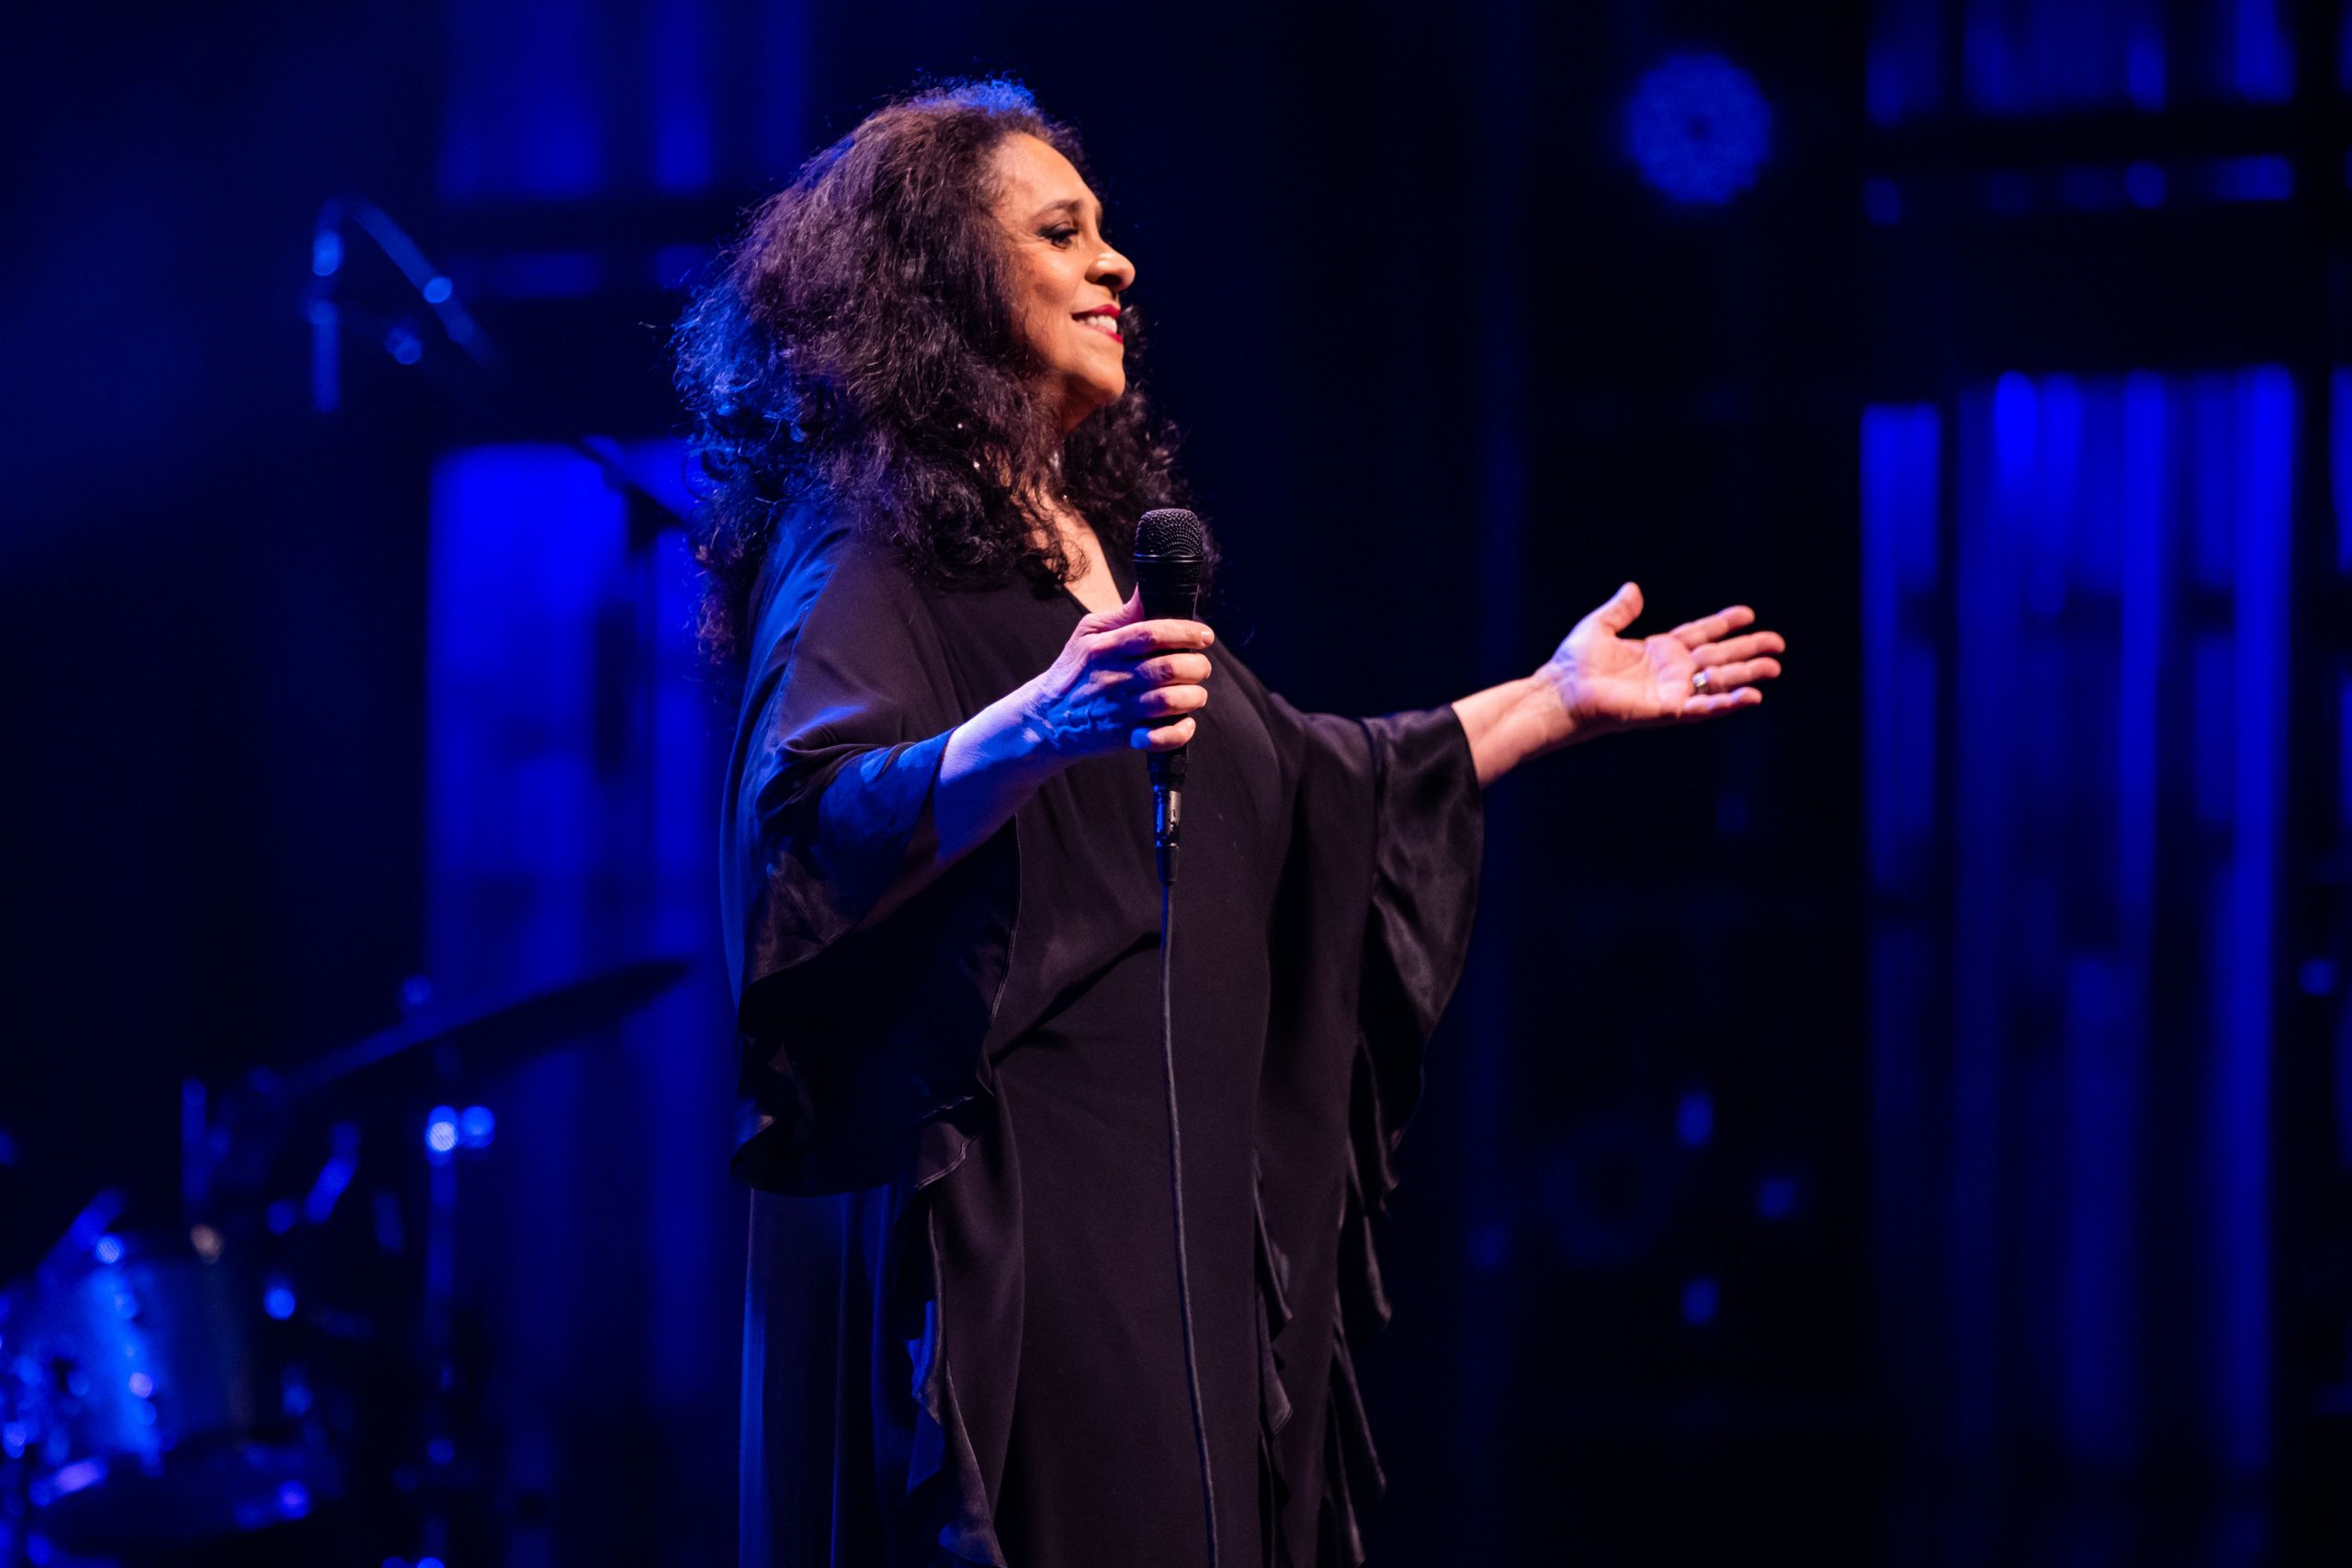 A imagem mostra a cantora Gal Costa que sorri com os braços abertos. Ela usa um vestido longo preto. O fundo da imagem possui tons pretos e azuis.